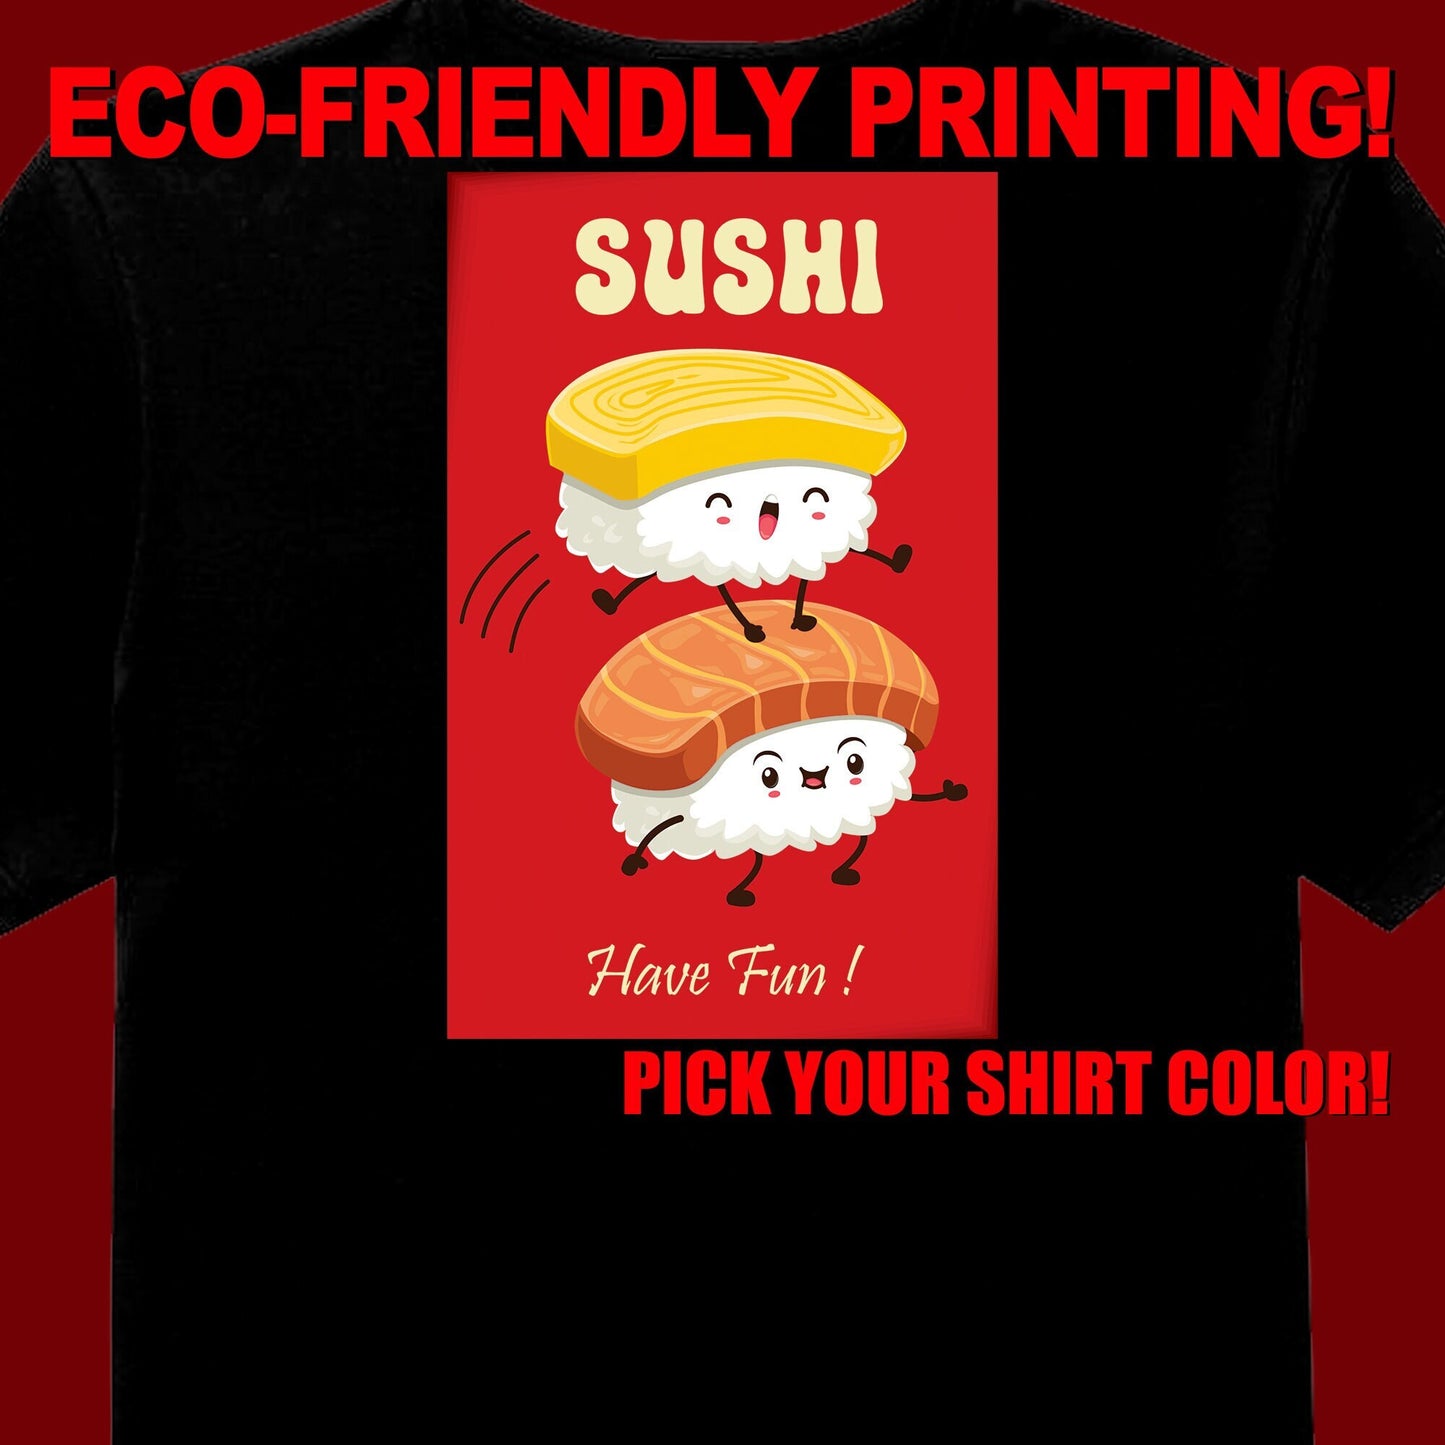 Sushi Fun T Shirt, Love Sushi, Sushi Tee, Sushi Gift, Sushi Clothing